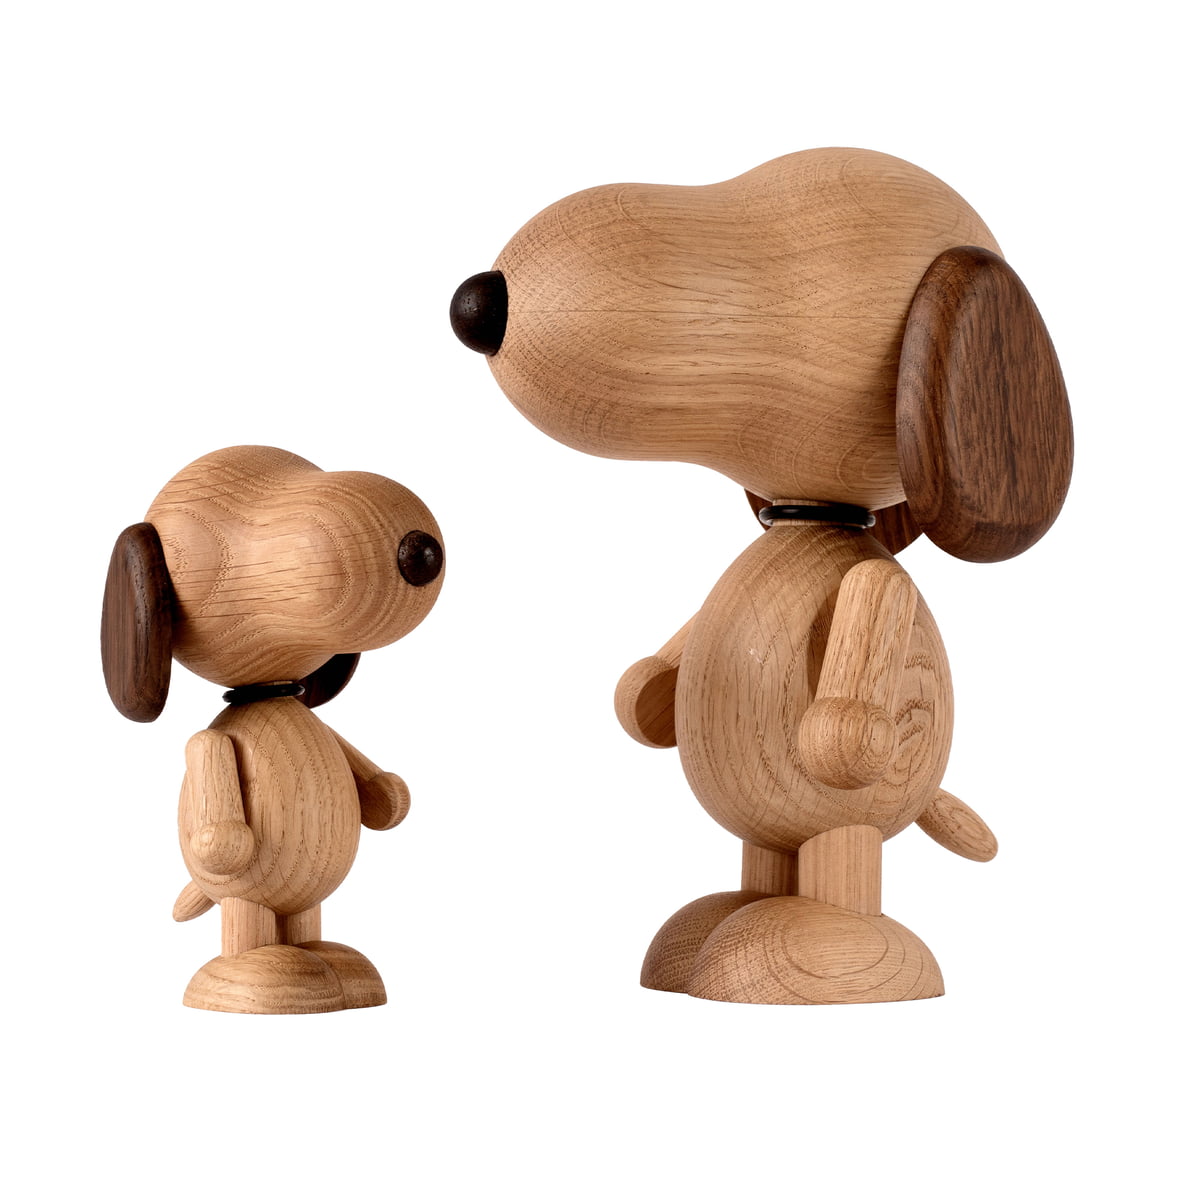 https://cdn.connox.de/m/100030/588613/media/Boyhood/Snoopy/boyhood-Snoopy-Holzfigur.jpg